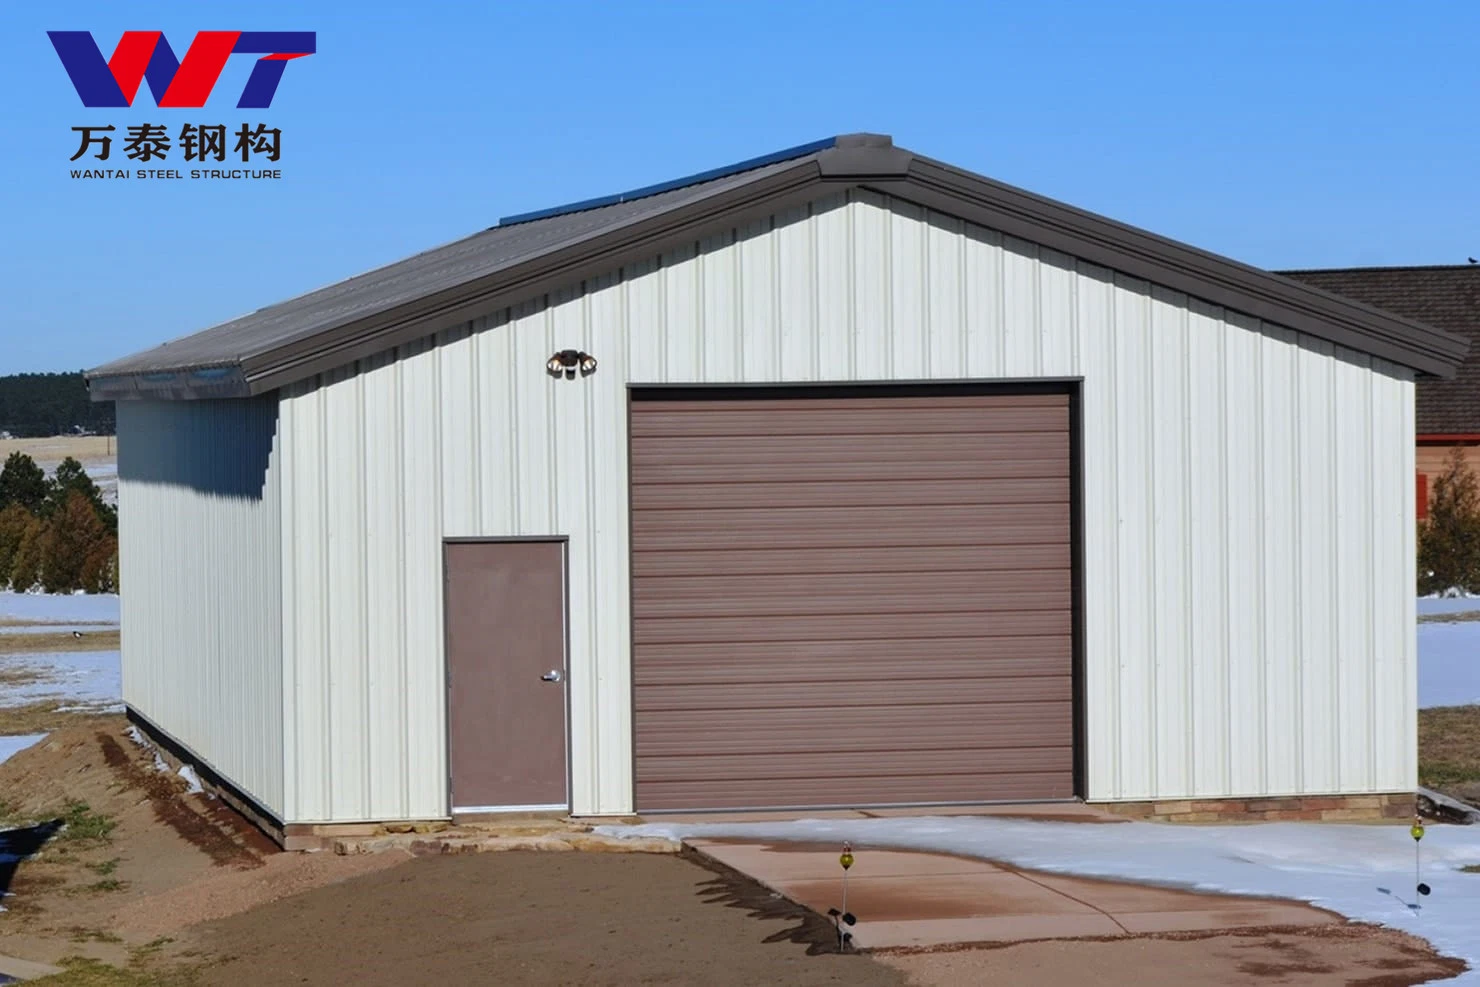 Atelier, Garage Kit de construction métalliques bâtiments en acier, des garages de construction métalliques